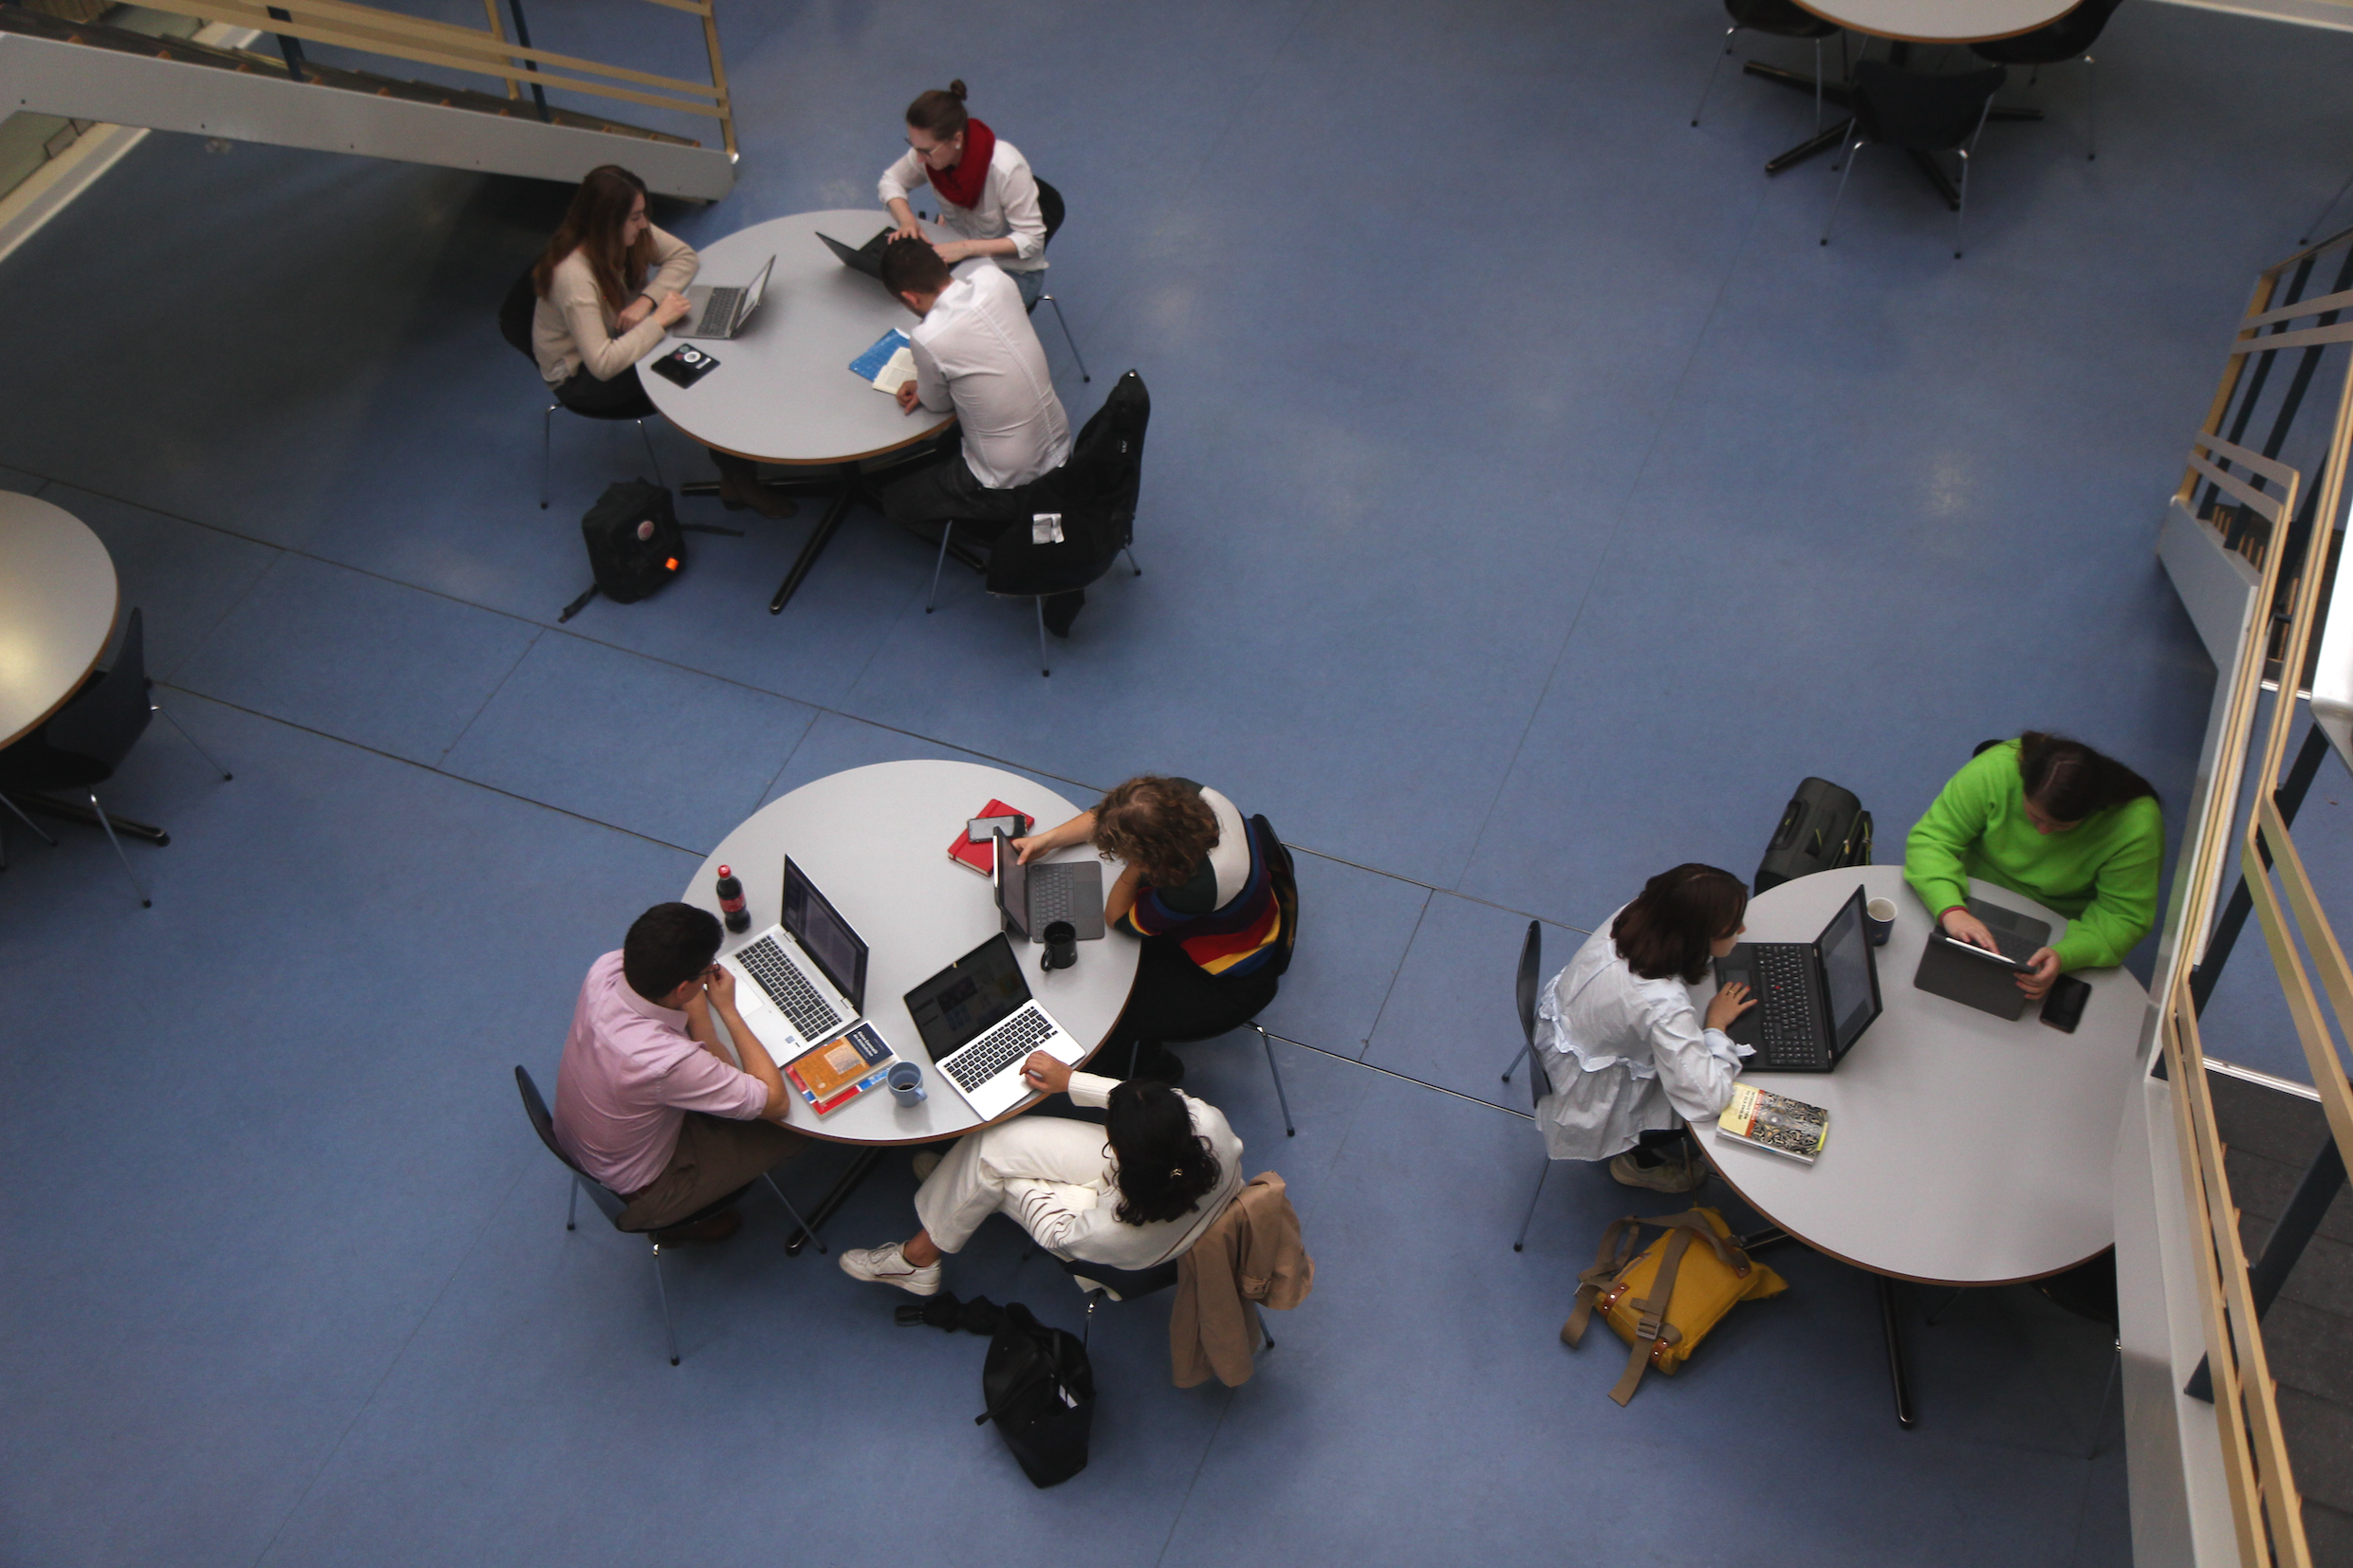 Das Bild zeigt drei runde Tische im Lernraum am Deutschen Seminar, an denen Studierende arbeiten.